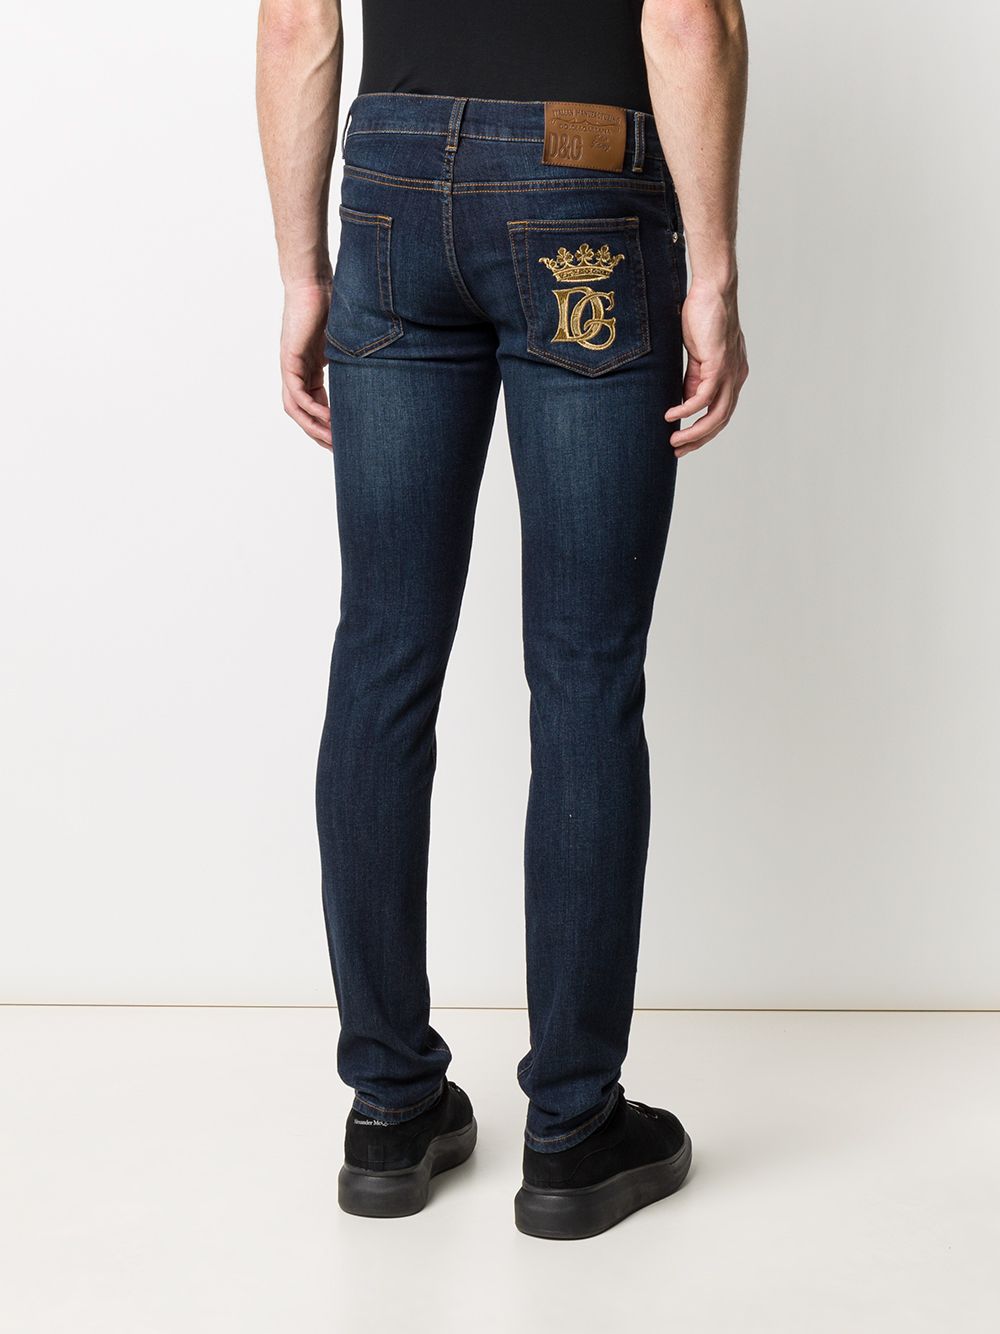 фото Dolce & gabbana джинсы кроя слим с вышитым логотипом